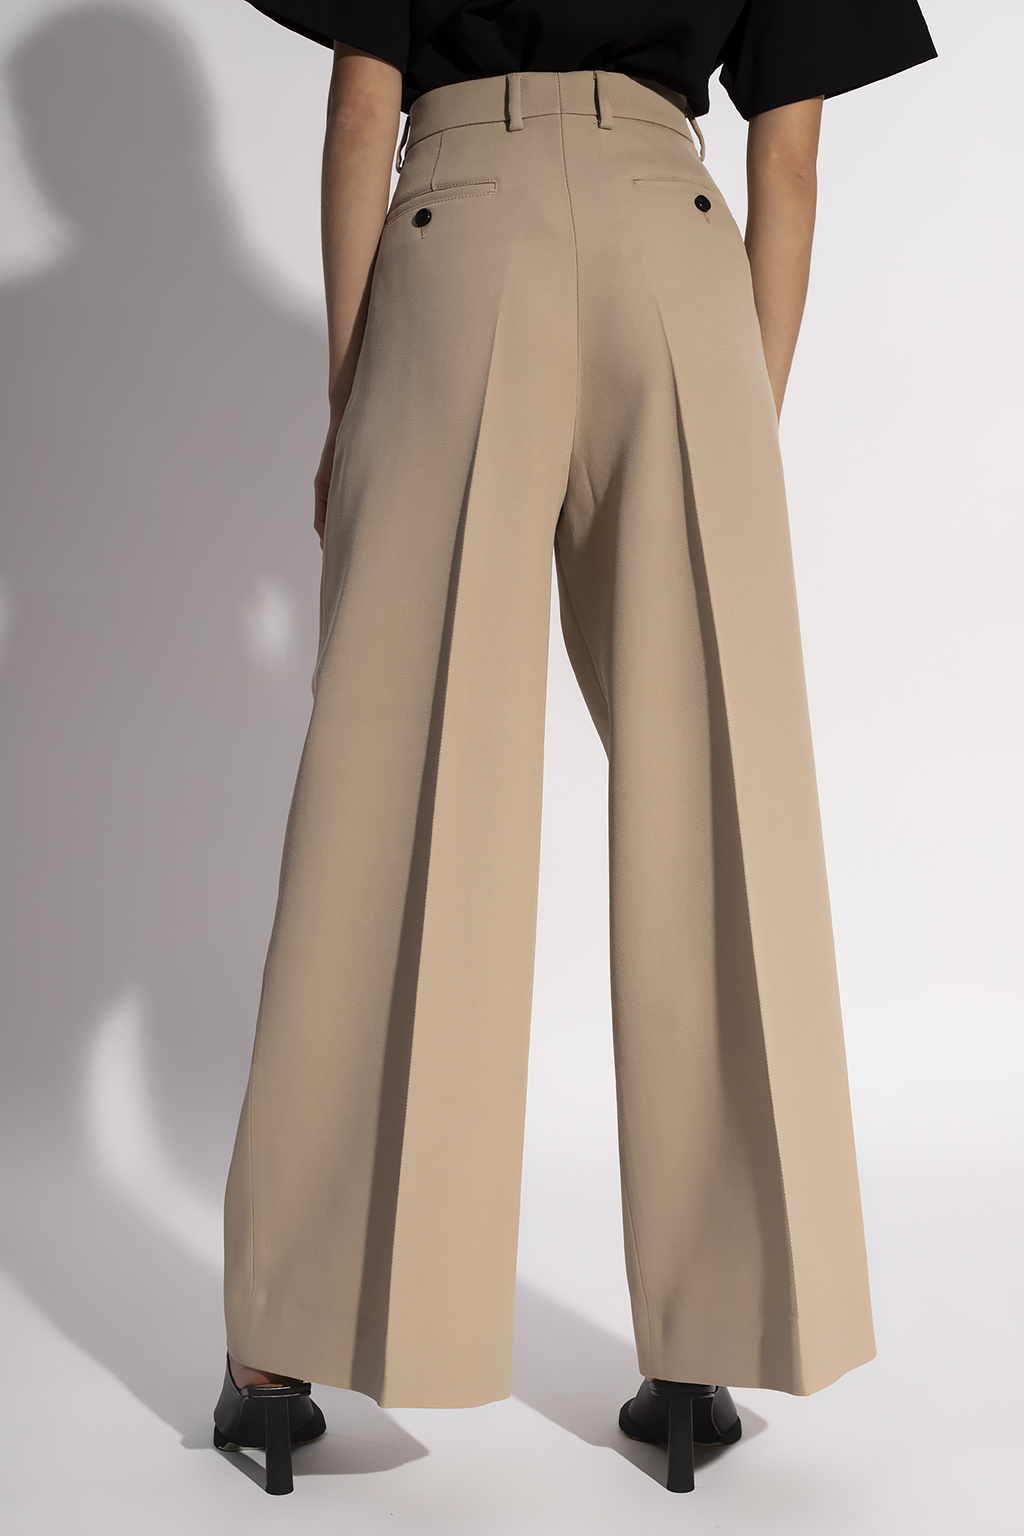 Giambattista Valli Straight-Leg Pants for Women Pleat-front trousers